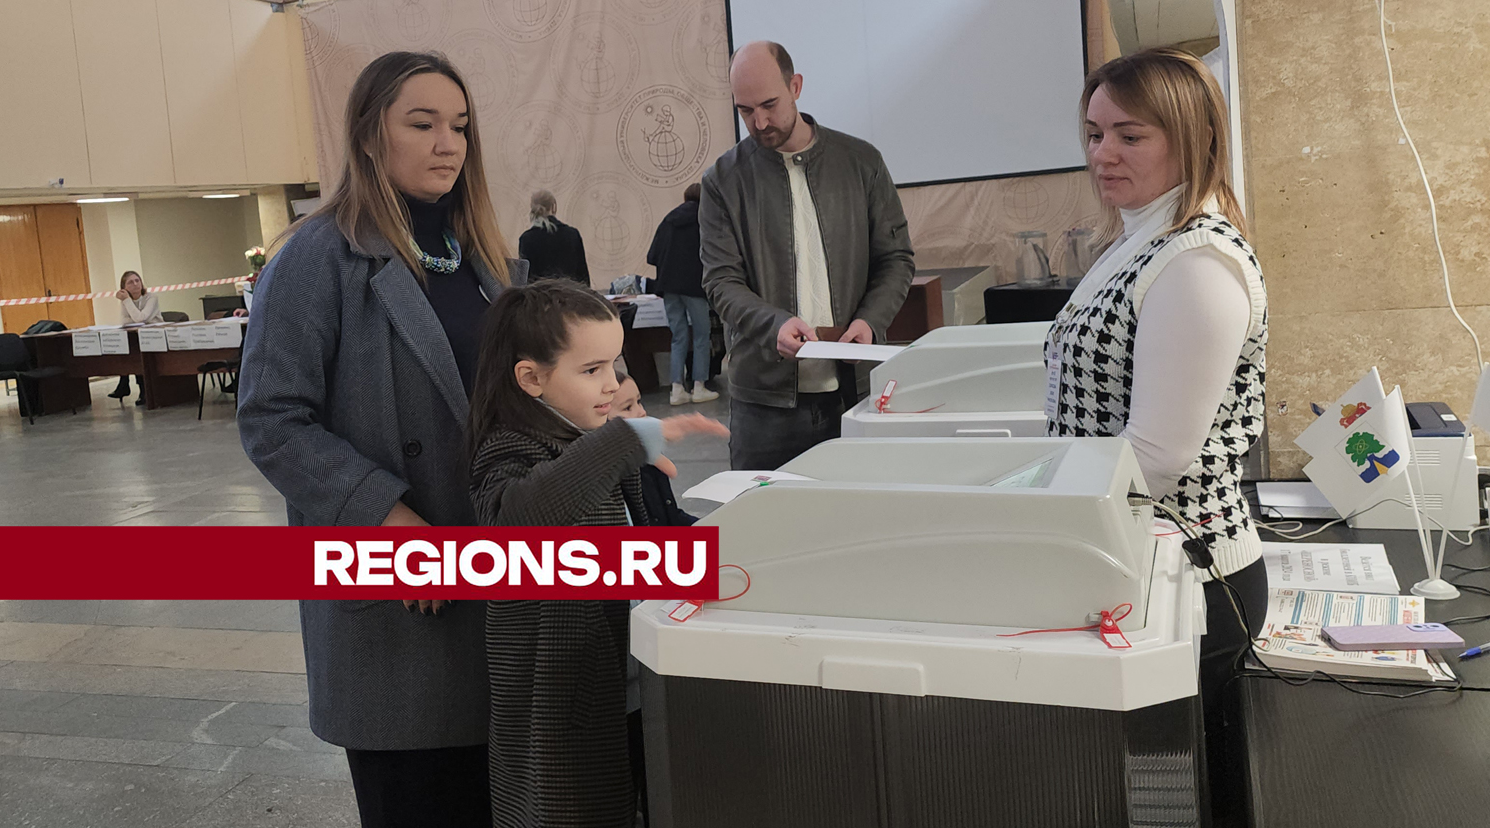 Дети семьи Крошиных помогли родителям проголосовать и угостились конфетами